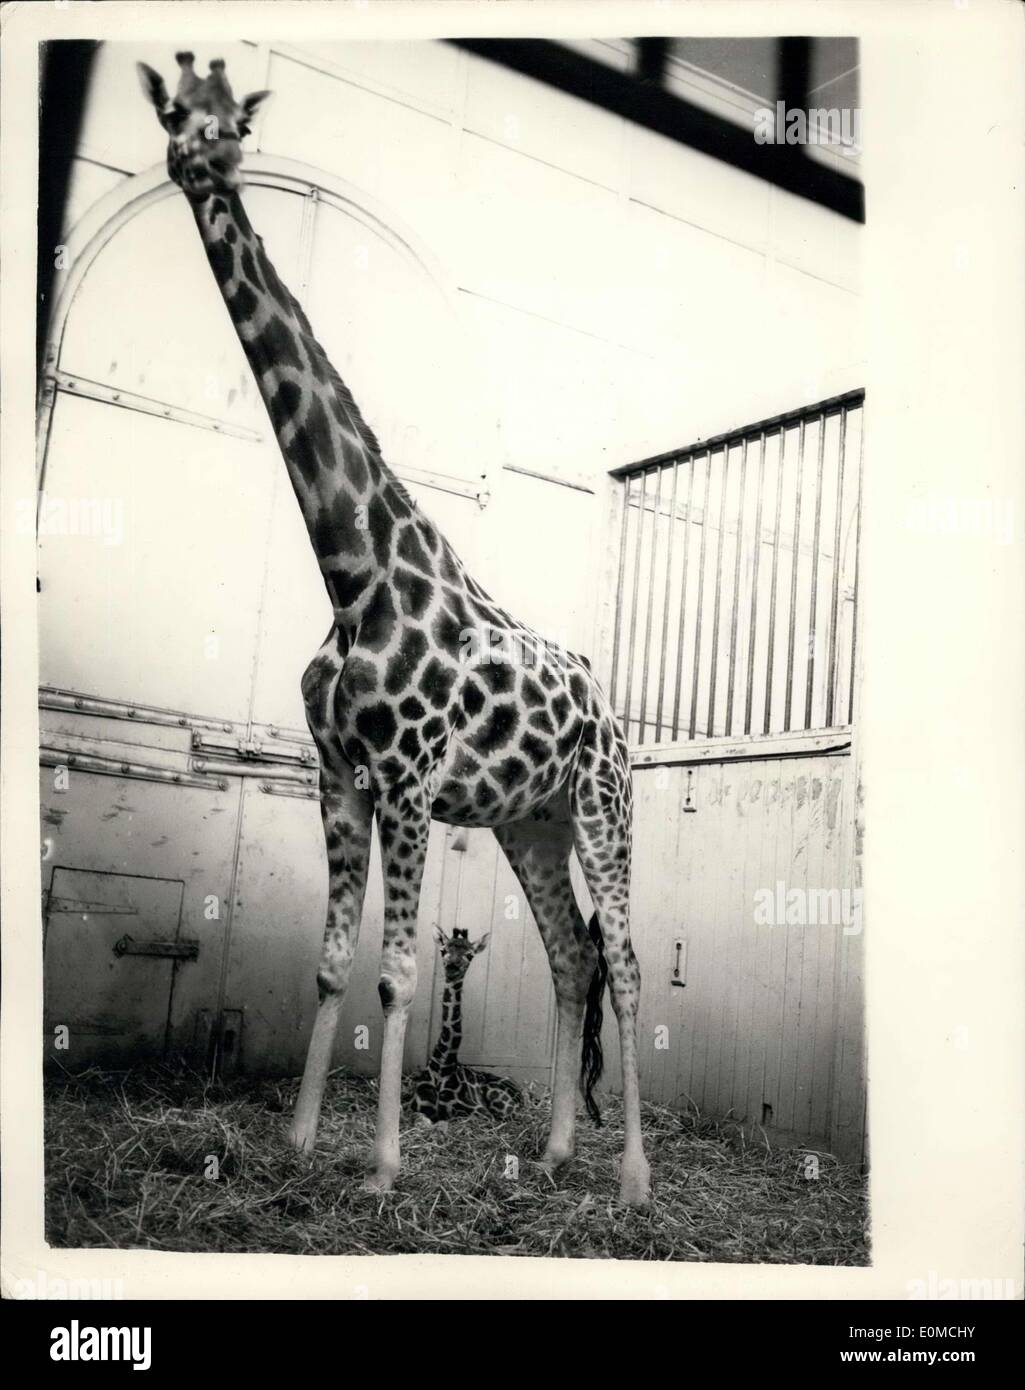 Sept. 29, 1954 - Zoo Nachwuchs. Chris - die Giraffe. Wochen alten Nachwuchs der Londoner Zoo Giraffe, Maud und Monty - hatte '' Chris'' benannt. Foto zeigt Mutter Giraffe Maud, steht Wache über ihr Baby '' Chris'', im Zoo von heute Nachmittag. Stockfoto